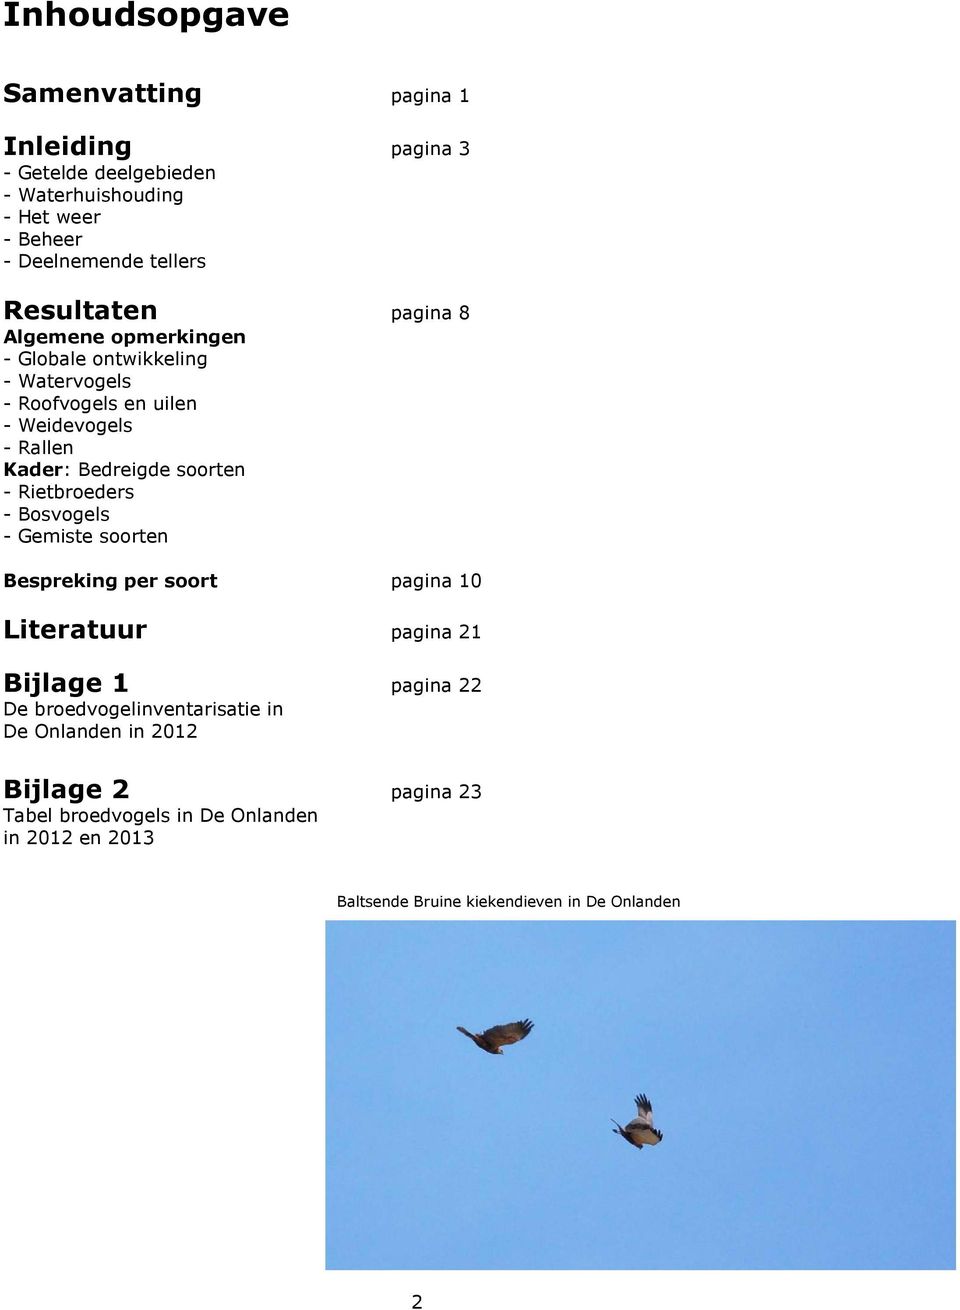 soorten - Rietbroeders - Bosvogels - Gemiste soorten Bespreking per soort pagina 10 Literatuur pagina 21 Bijlage 1 pagina 22 De